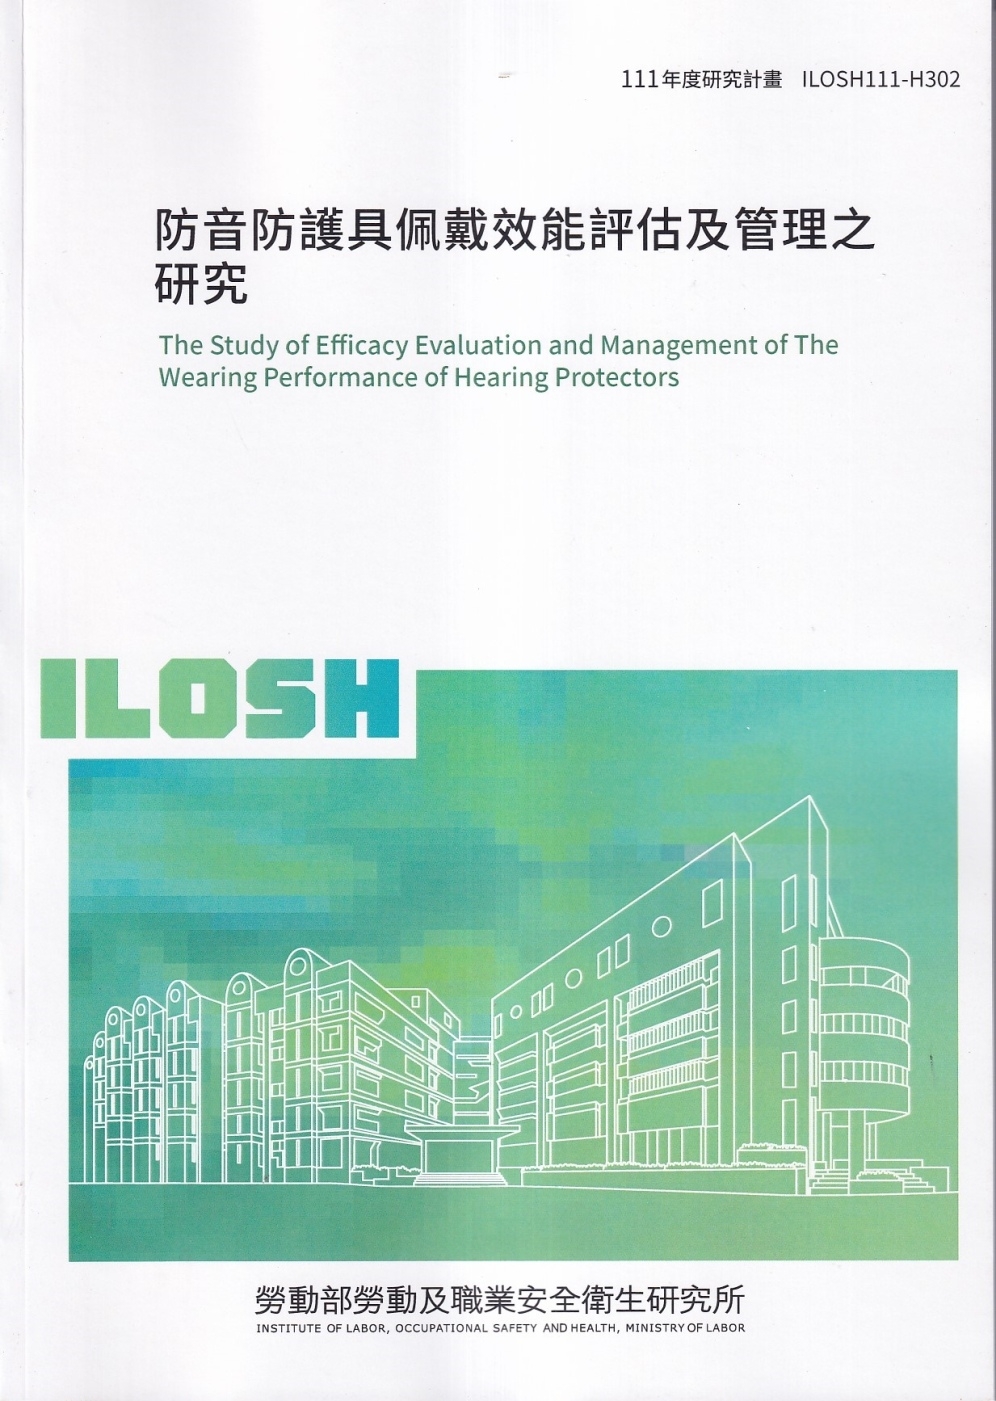 防音防護具佩戴效能評估及管理之研究ILOSH111-H302